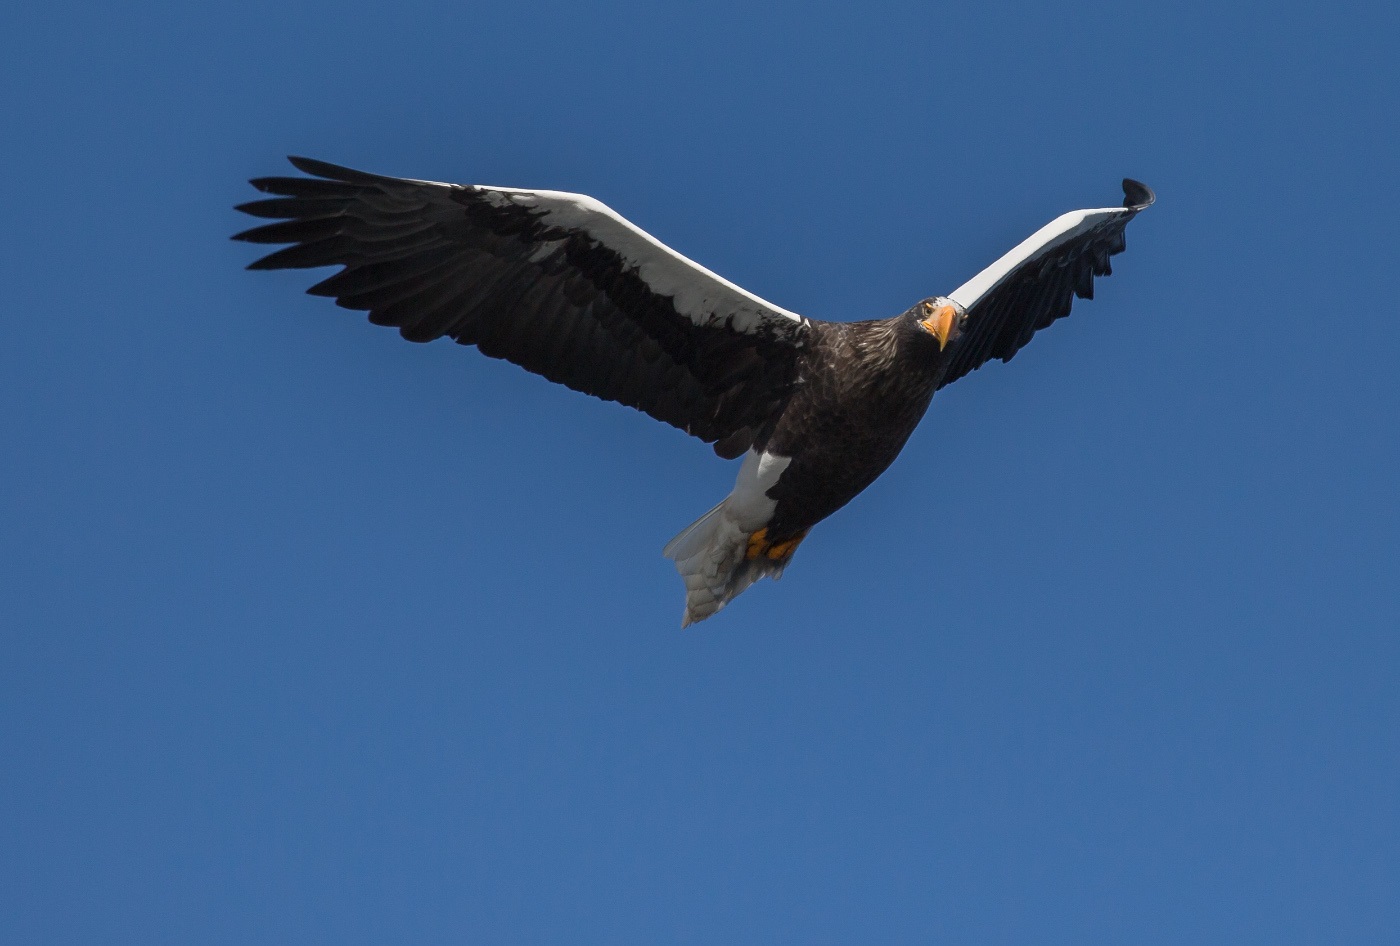 عقاب شانه ای در جستجوی شکار در آسمان بالا می رود.